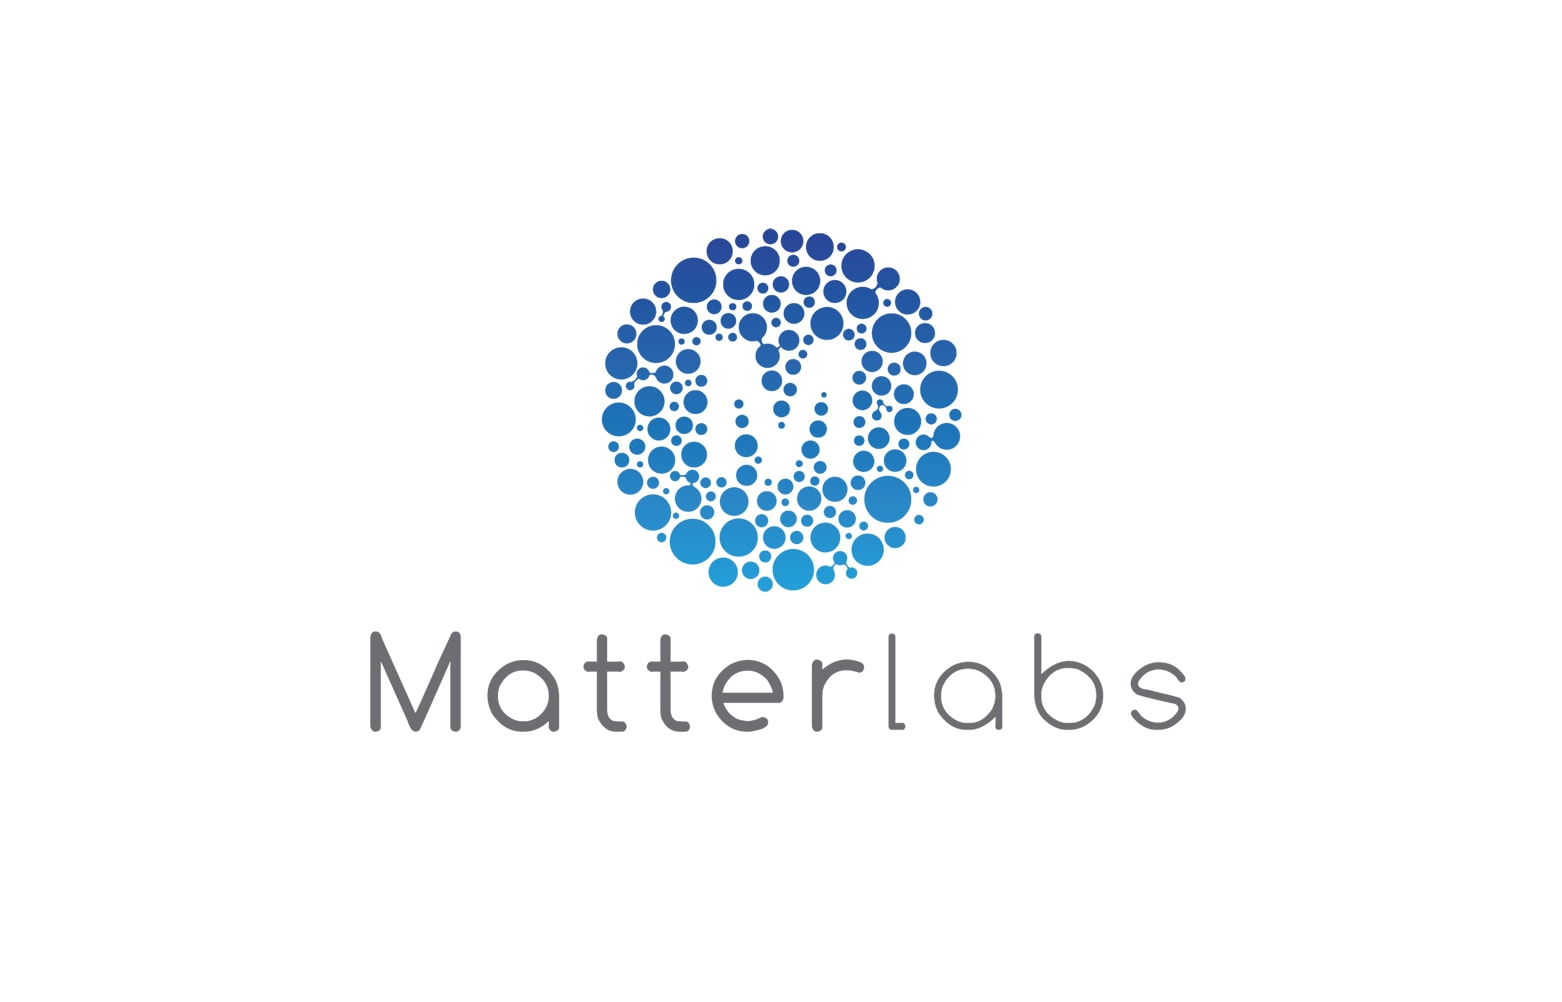 Matter Labs, работающий с экосистемой Ethereum, привлек $50 млн. инвестиций. Заглавный коллаж новости.